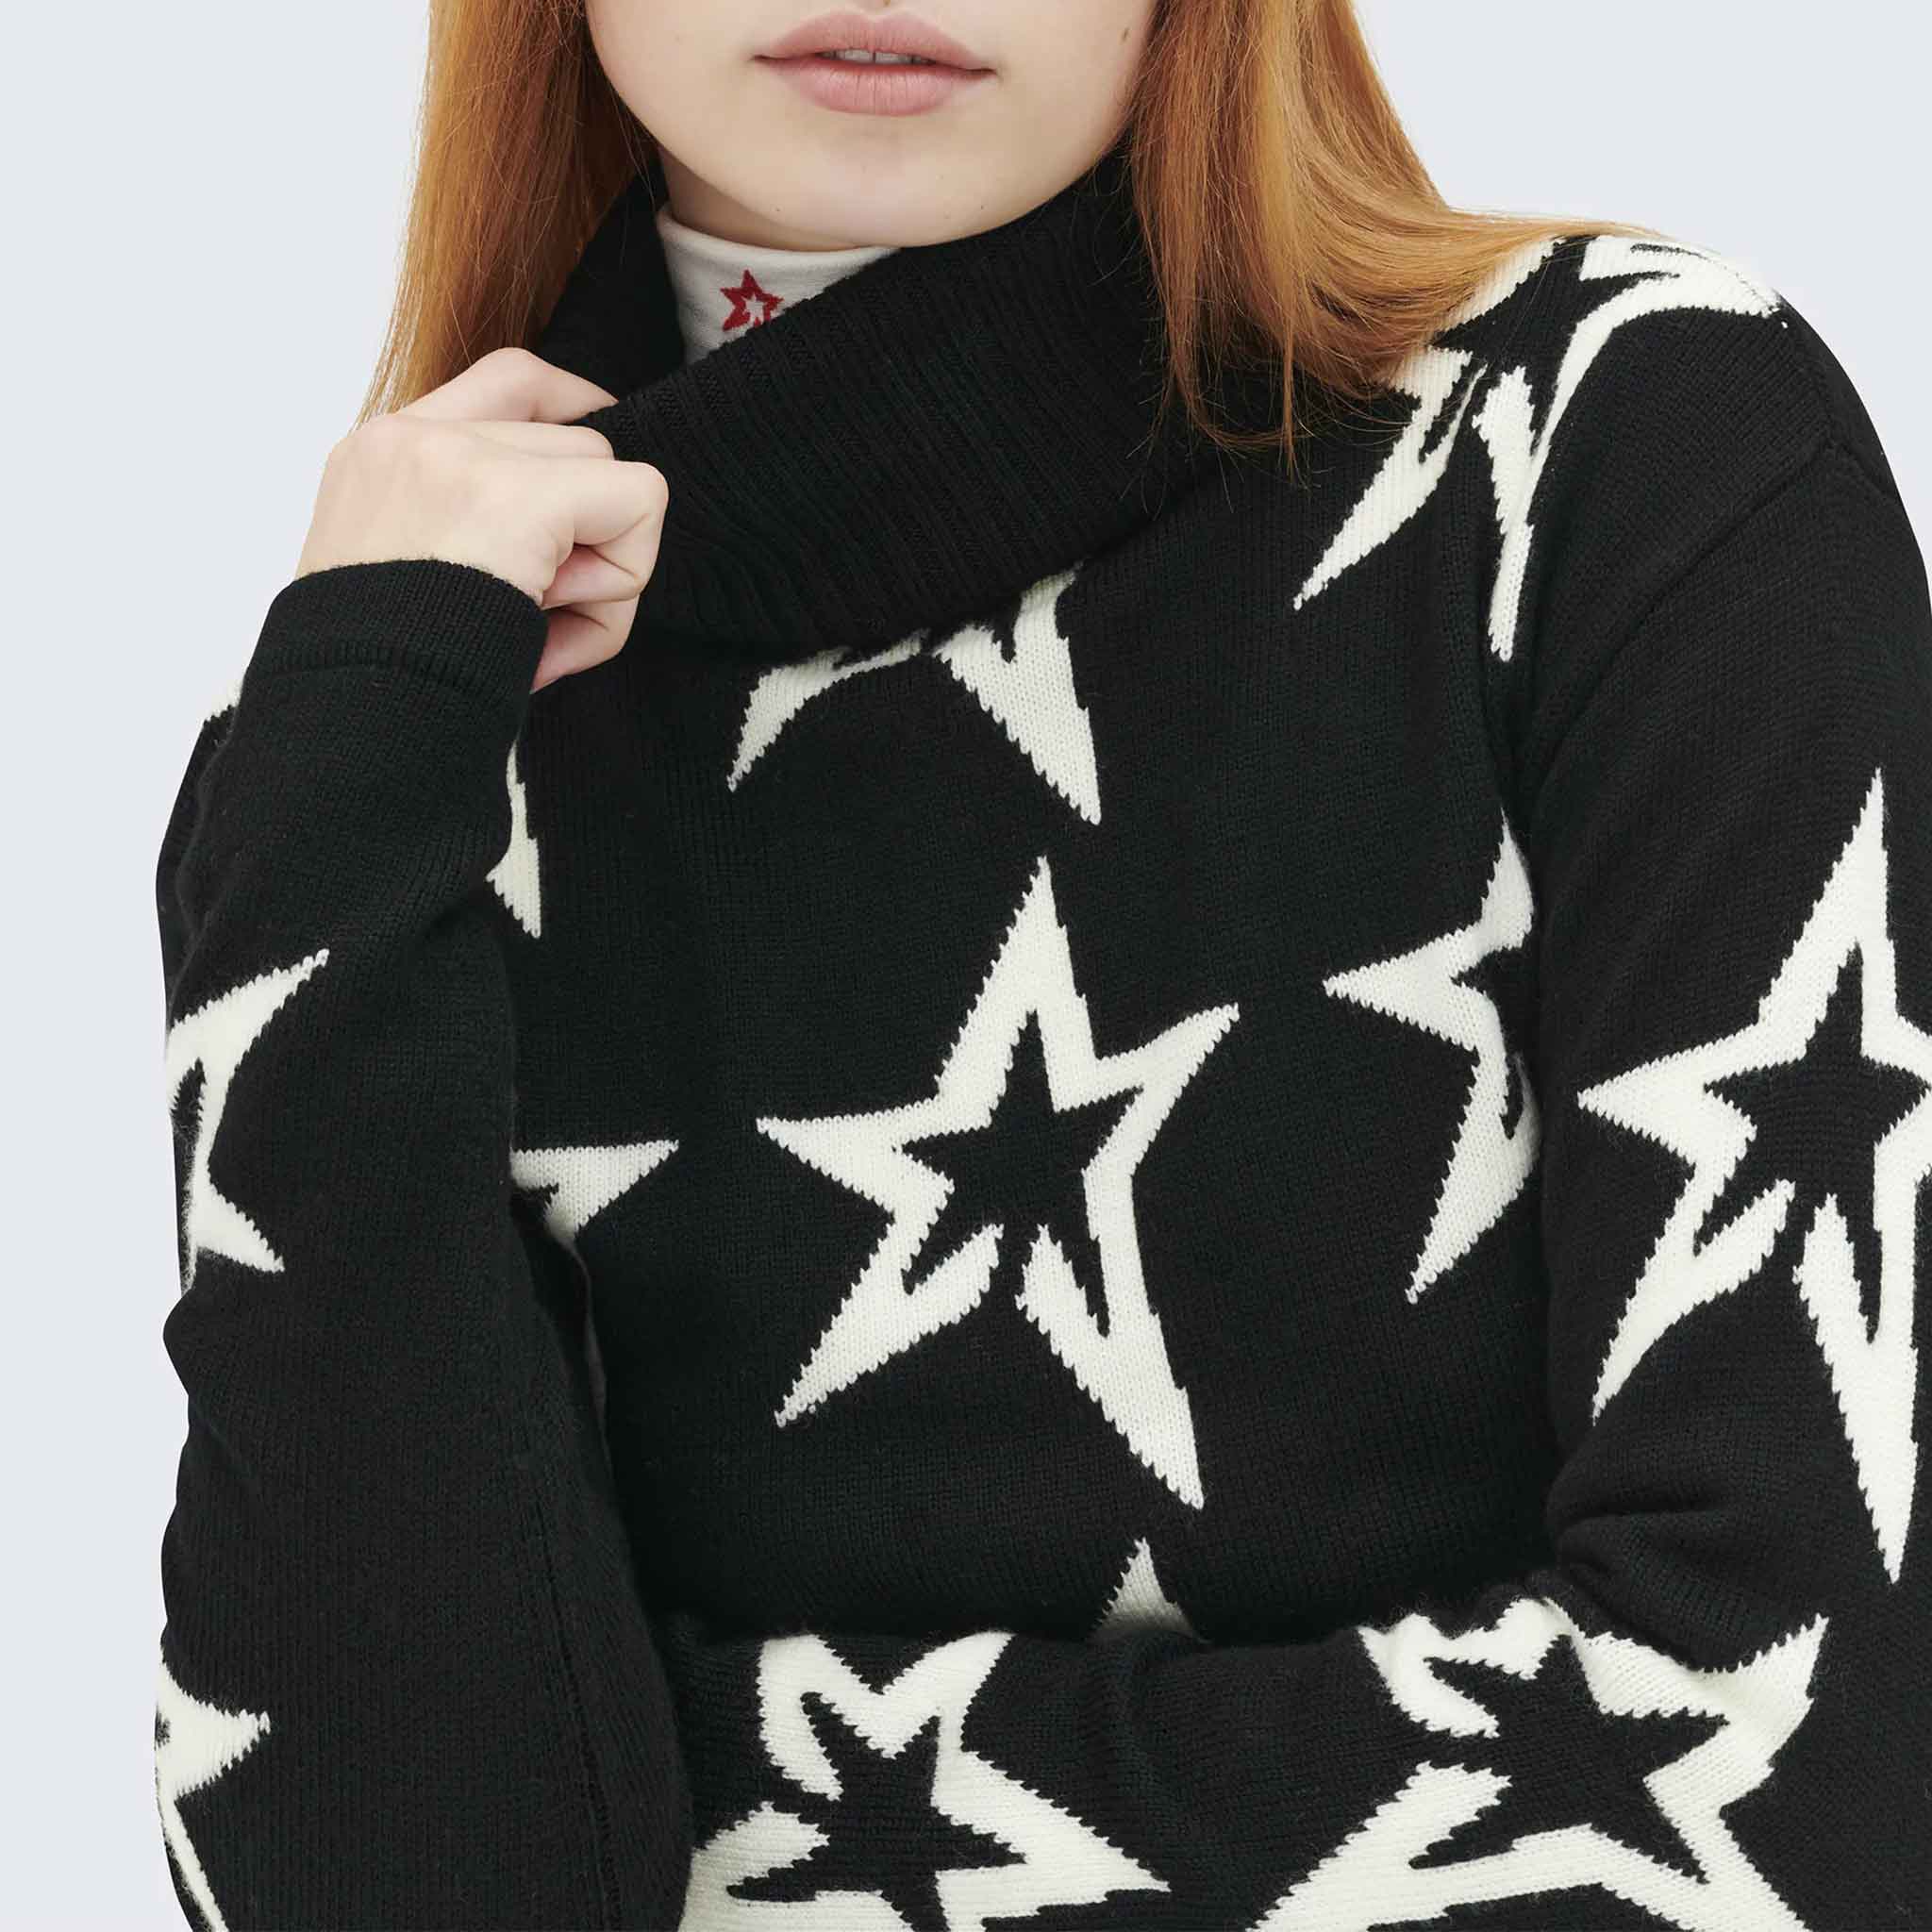 Star Dust Sweater in Black